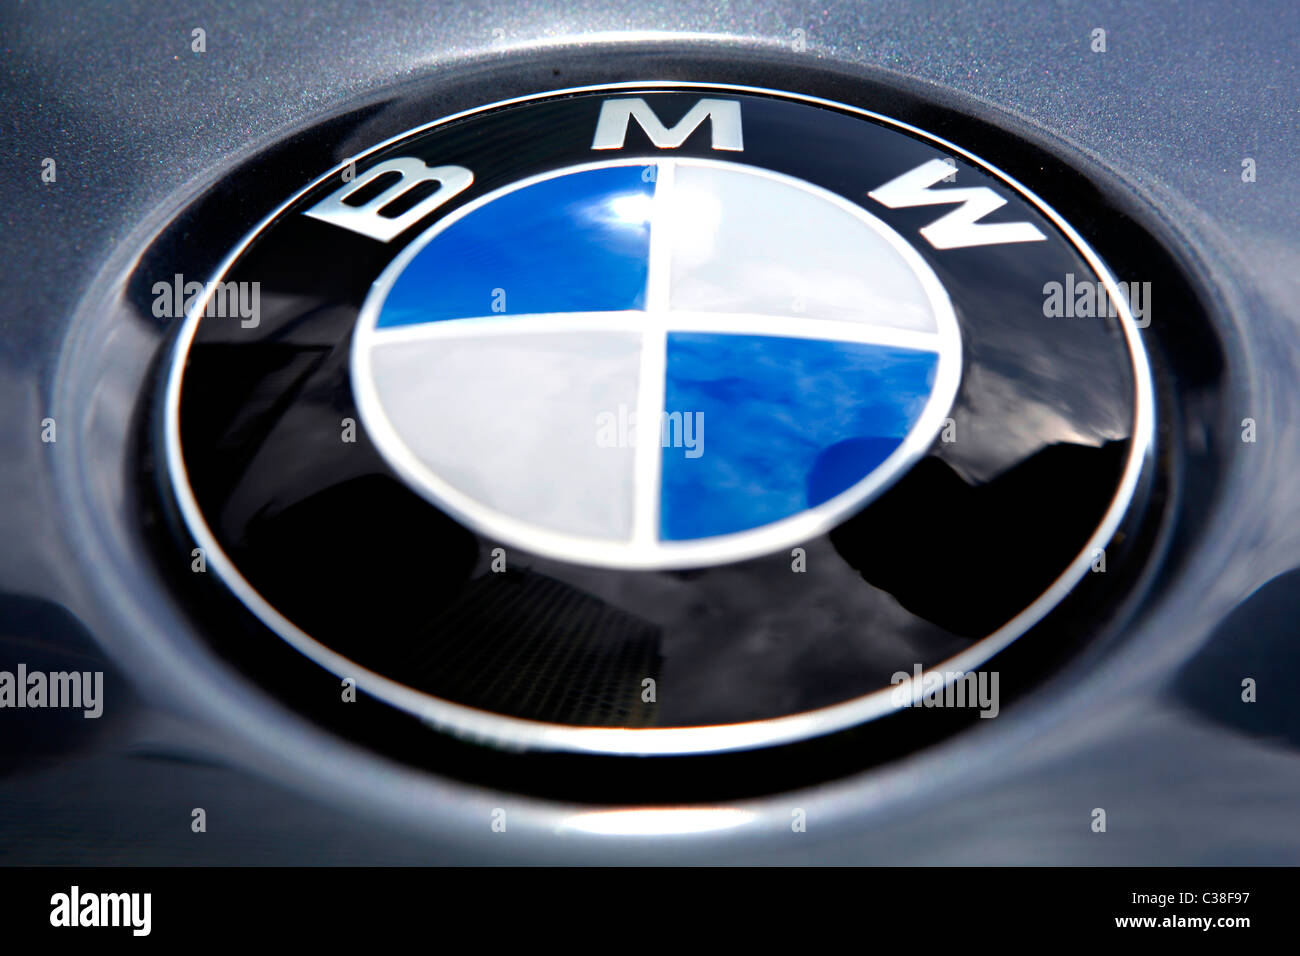 La imagen muestra una insignia BMW altamente pulido Fotografía de stock -  Alamy